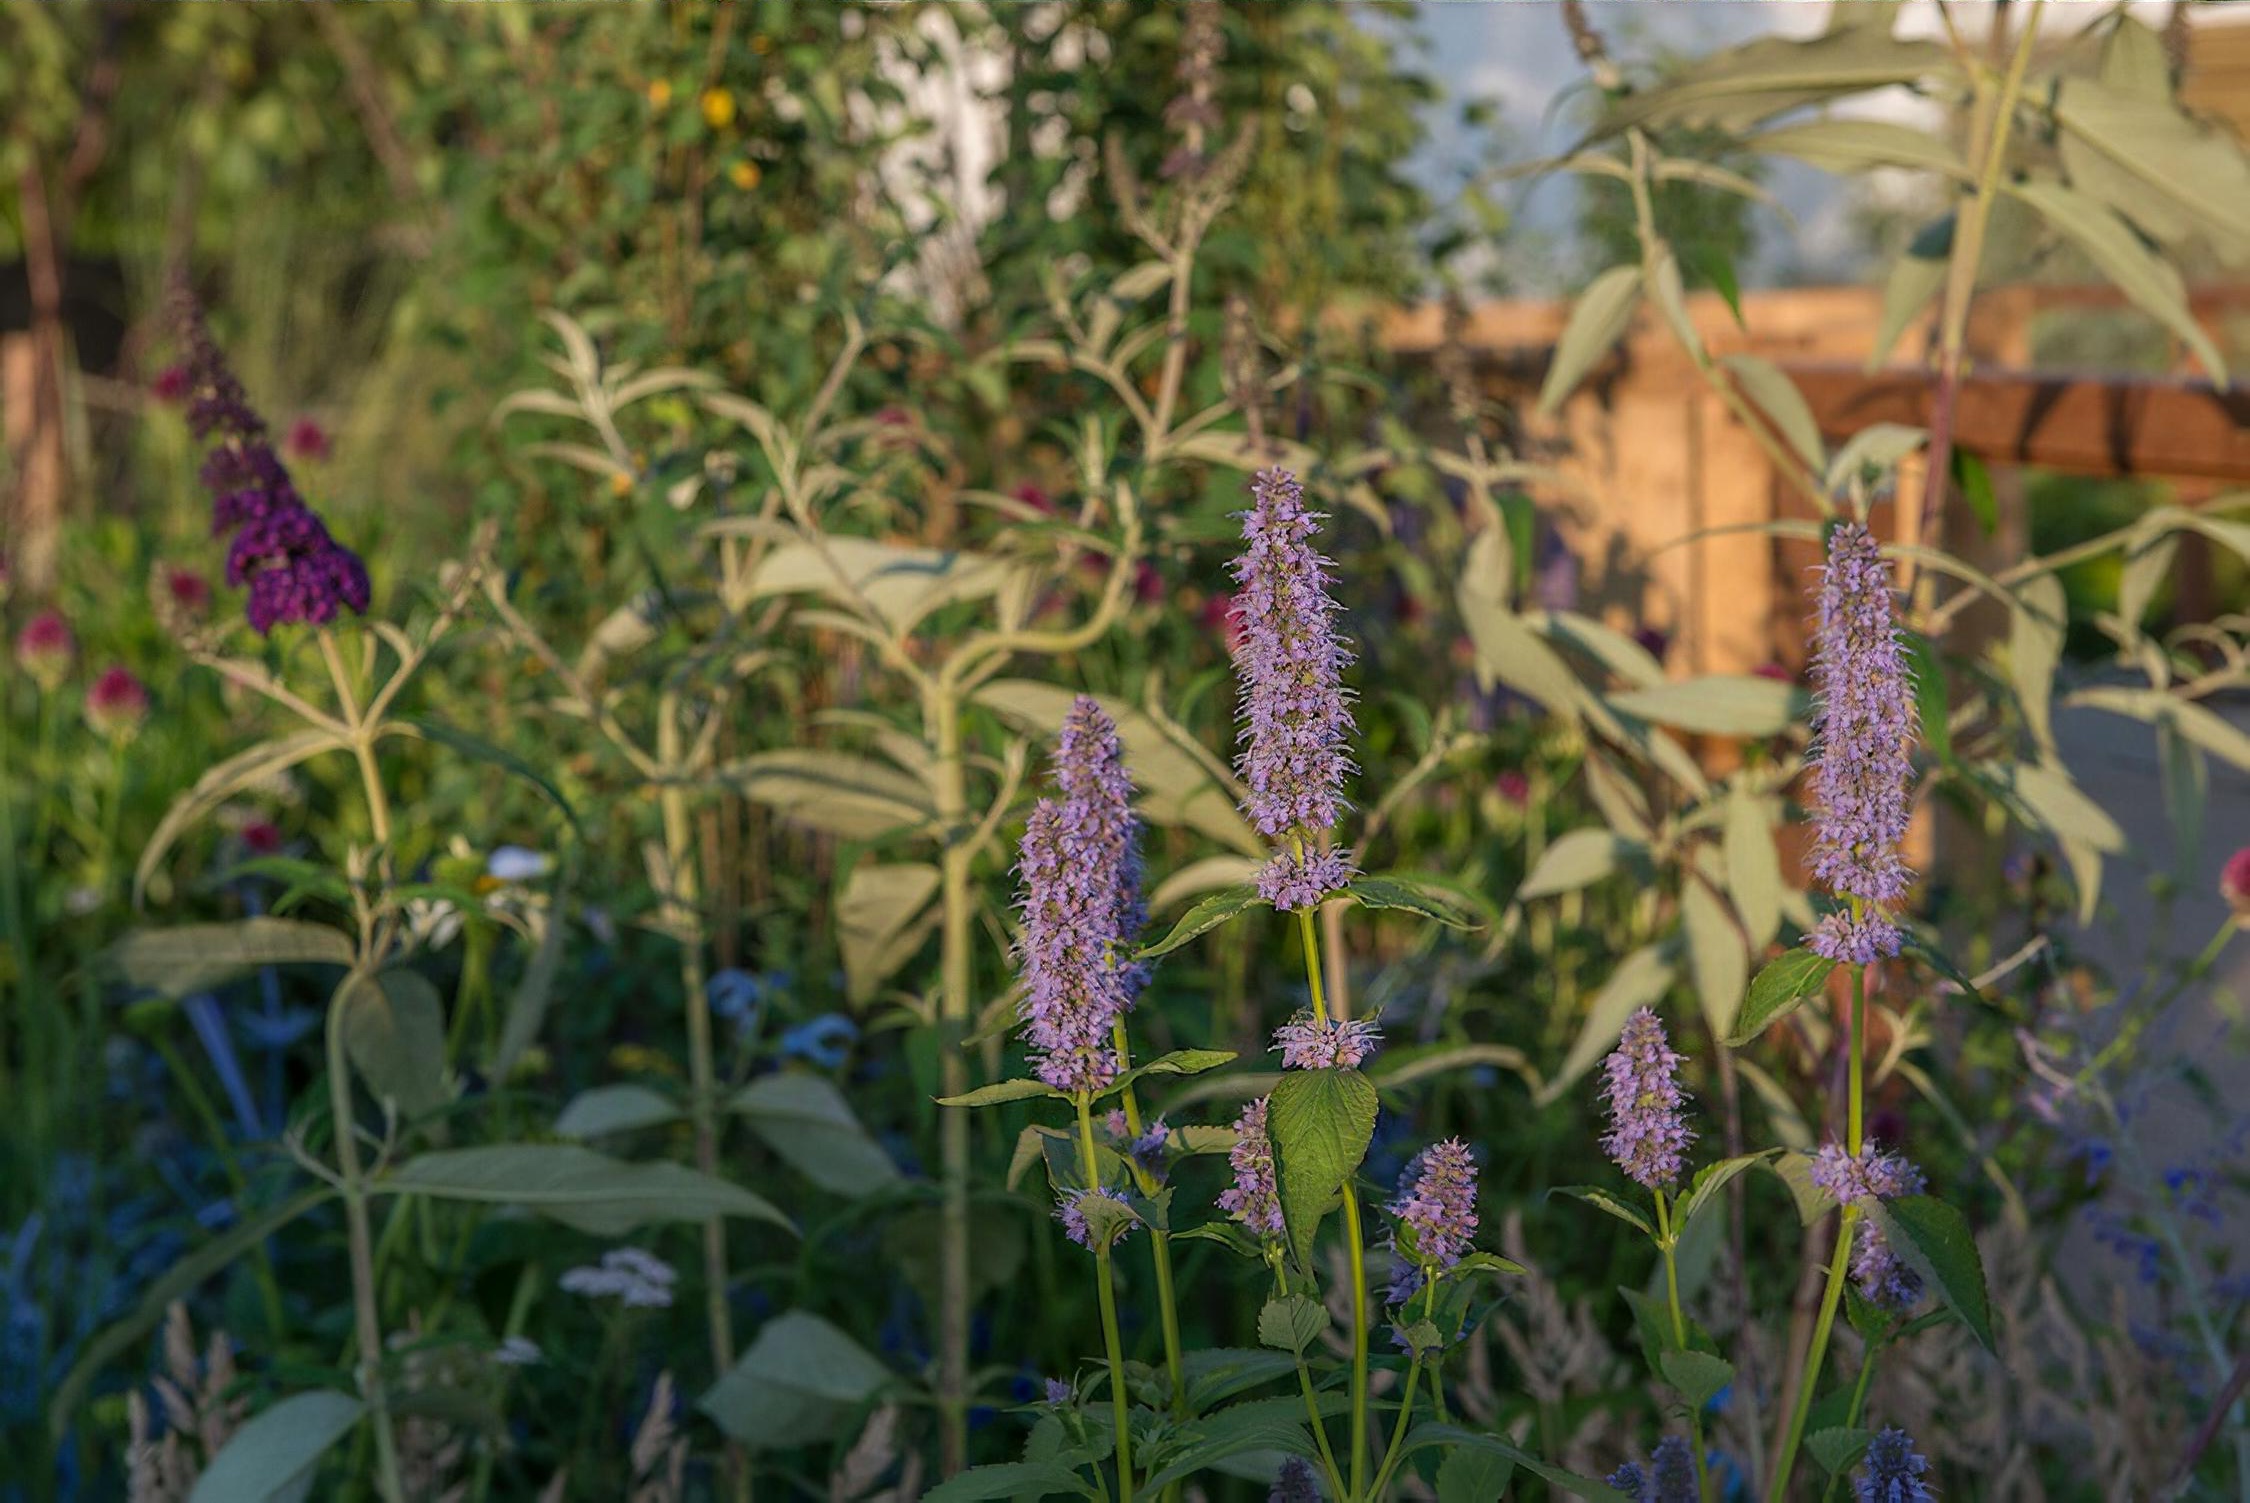 The Limbcare Wellbeing Garden Hampton Court Flower Show 2018 by landscape designer Edward Paul Mairis